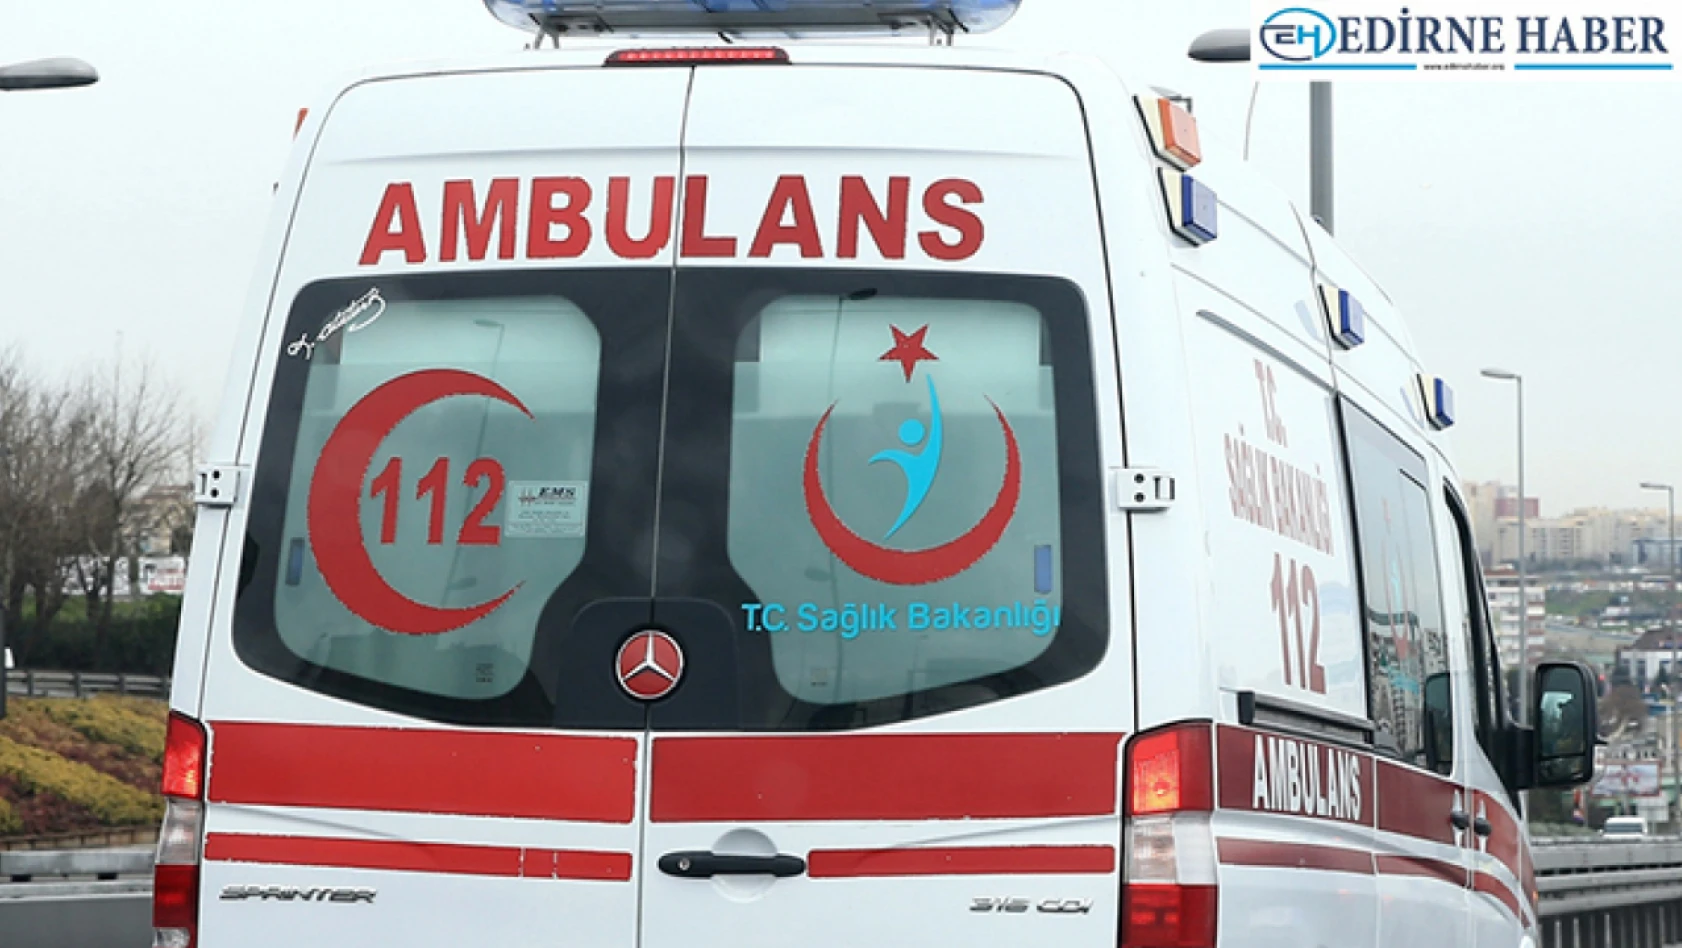 Edirne'de tırla çarpışan otomobil sürücüsü yaralandı